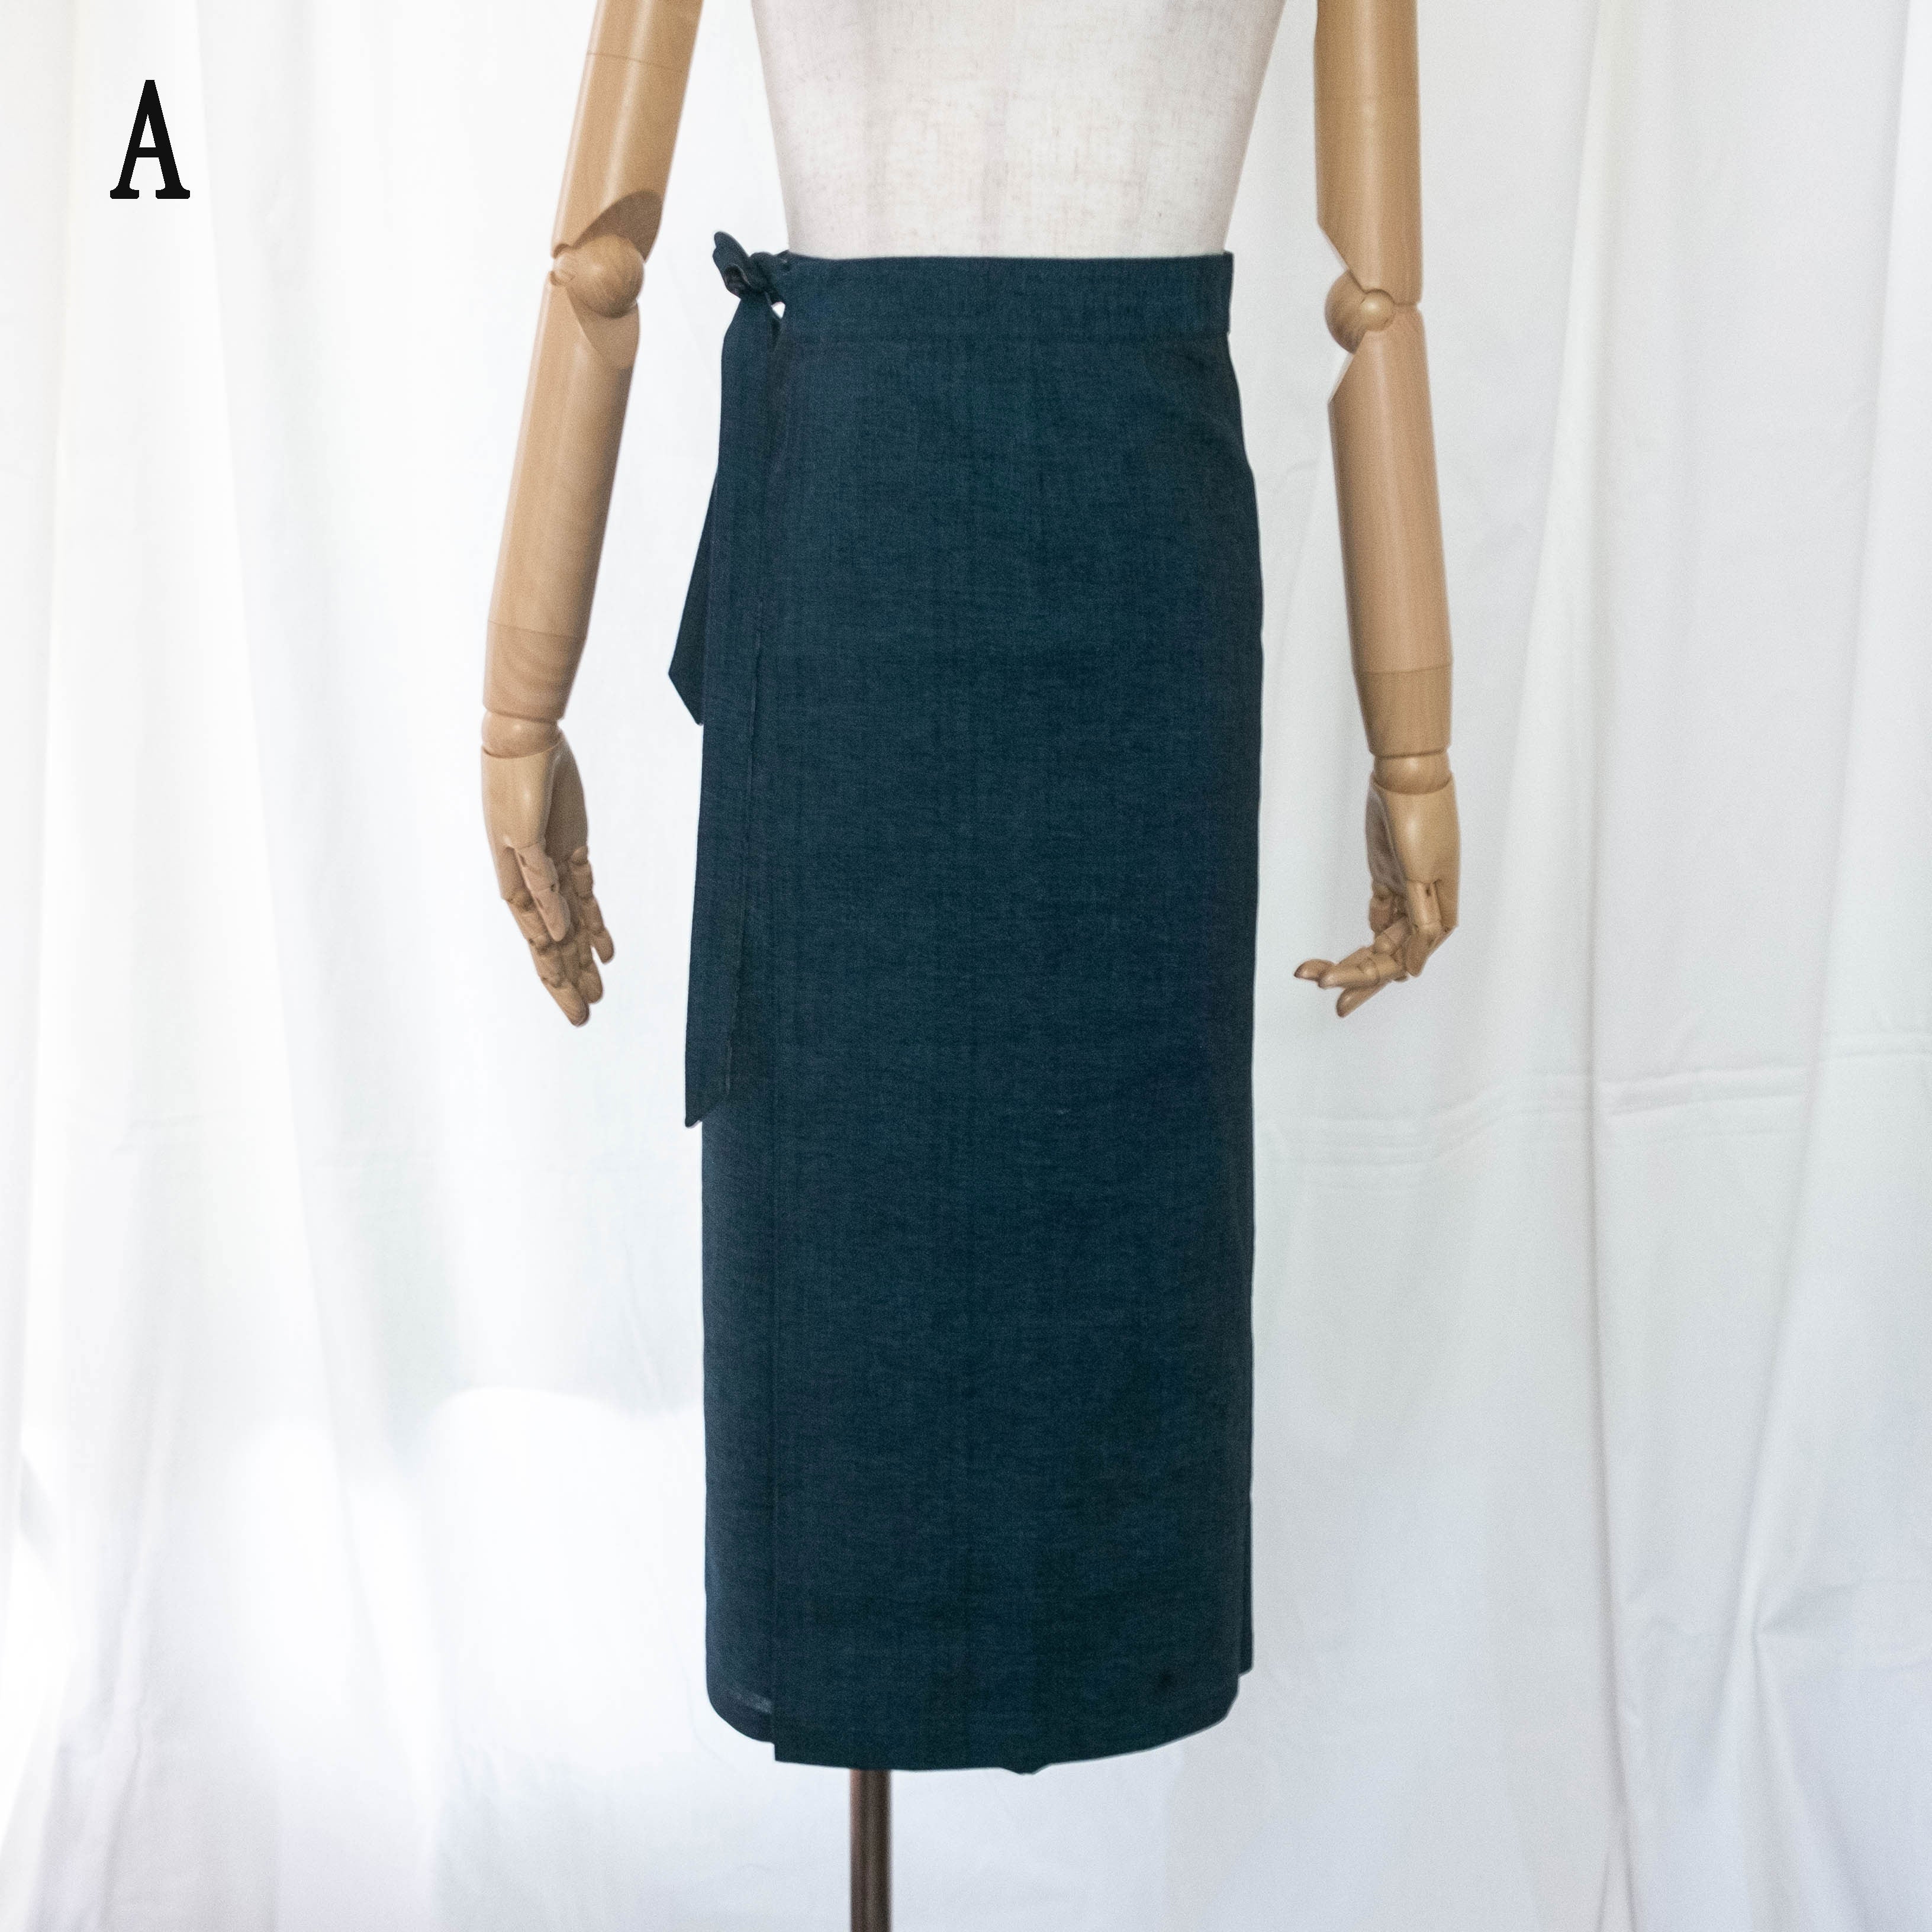 Reversible Skirt Long Straight - Paisley